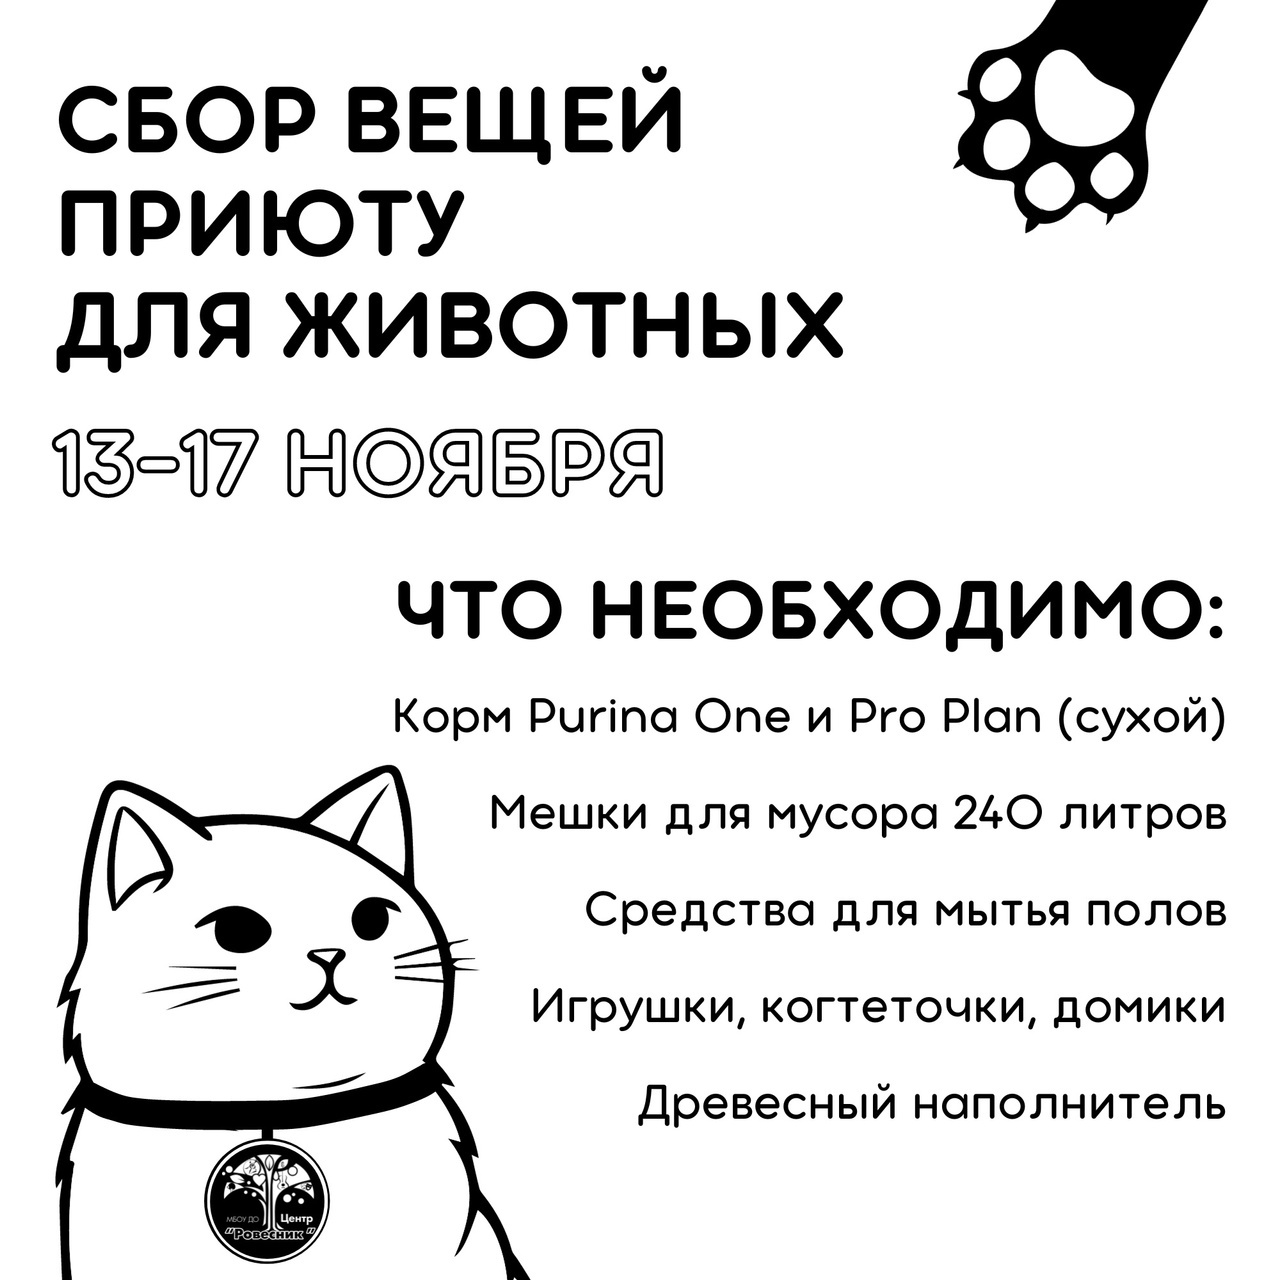 Афиша Ижевска — Сбор вещей для приюта «Дом кота»